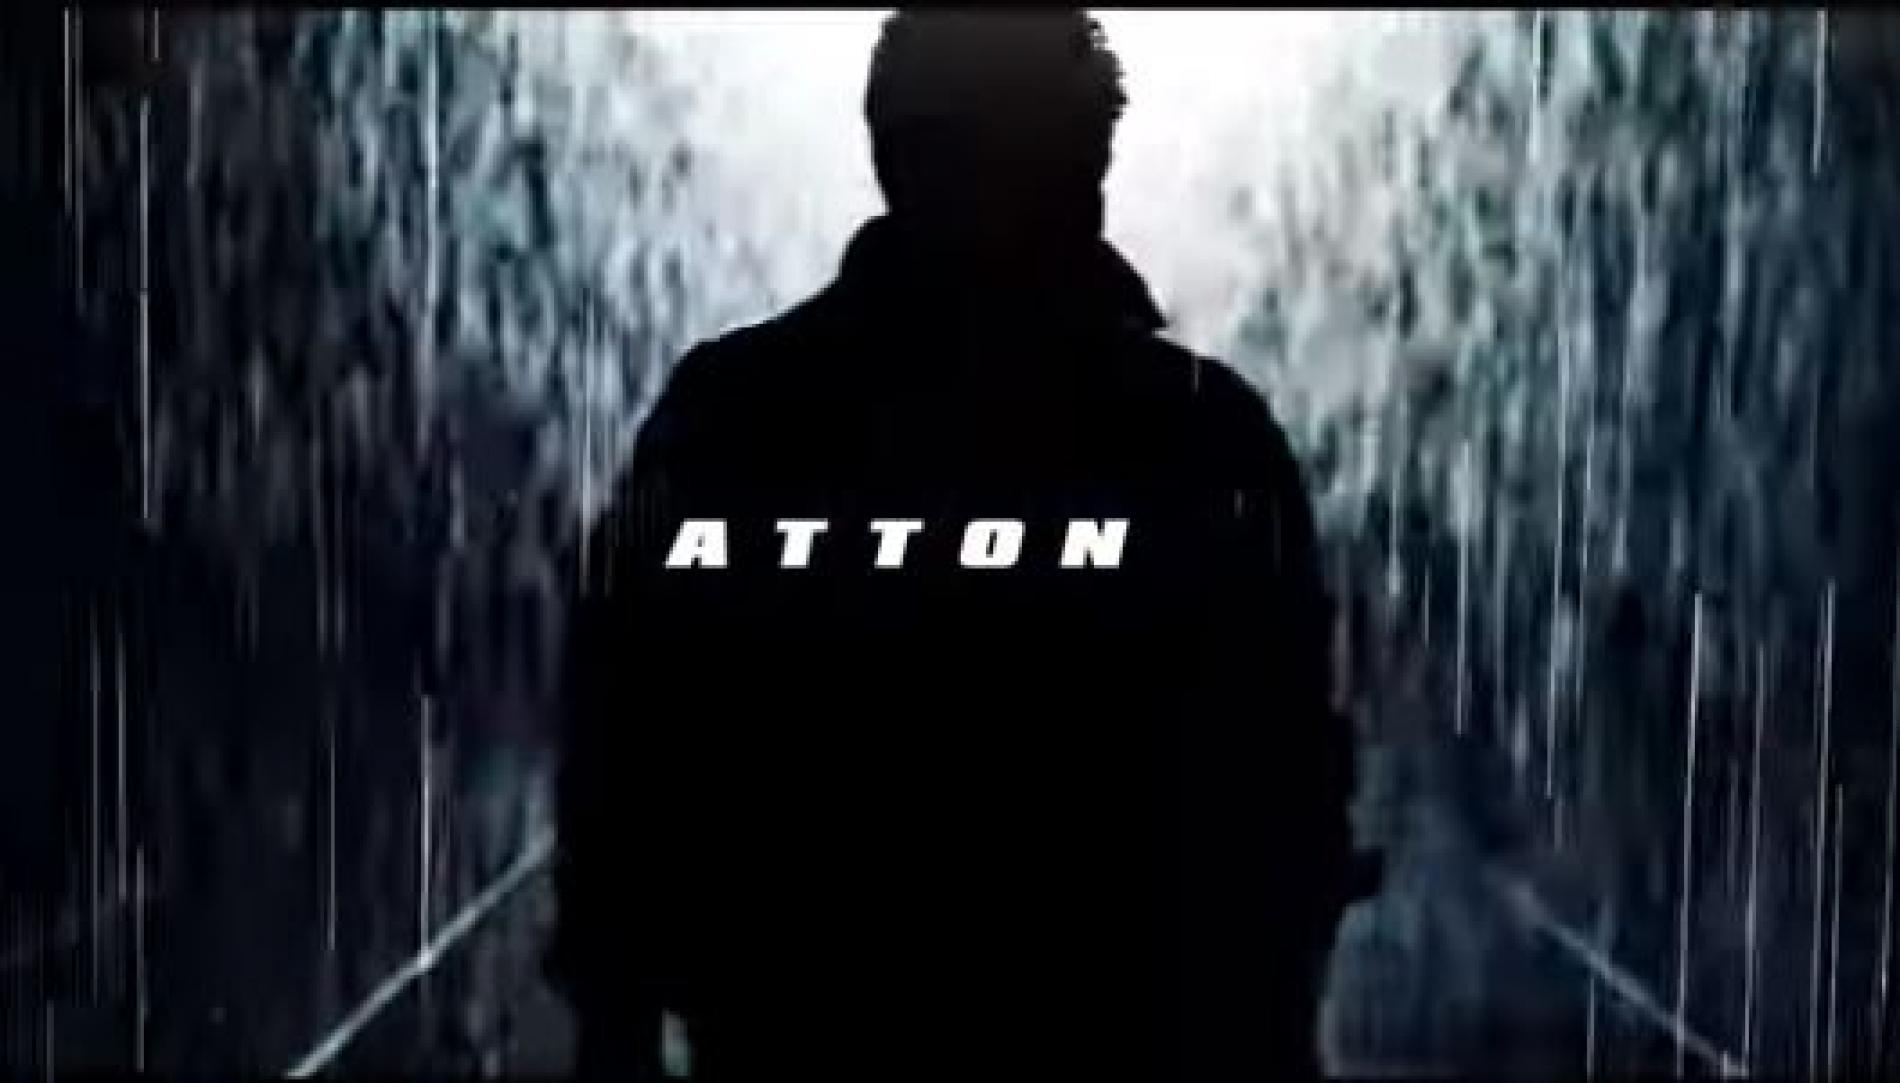 New Music : Atton – Closer (Lyric Video)